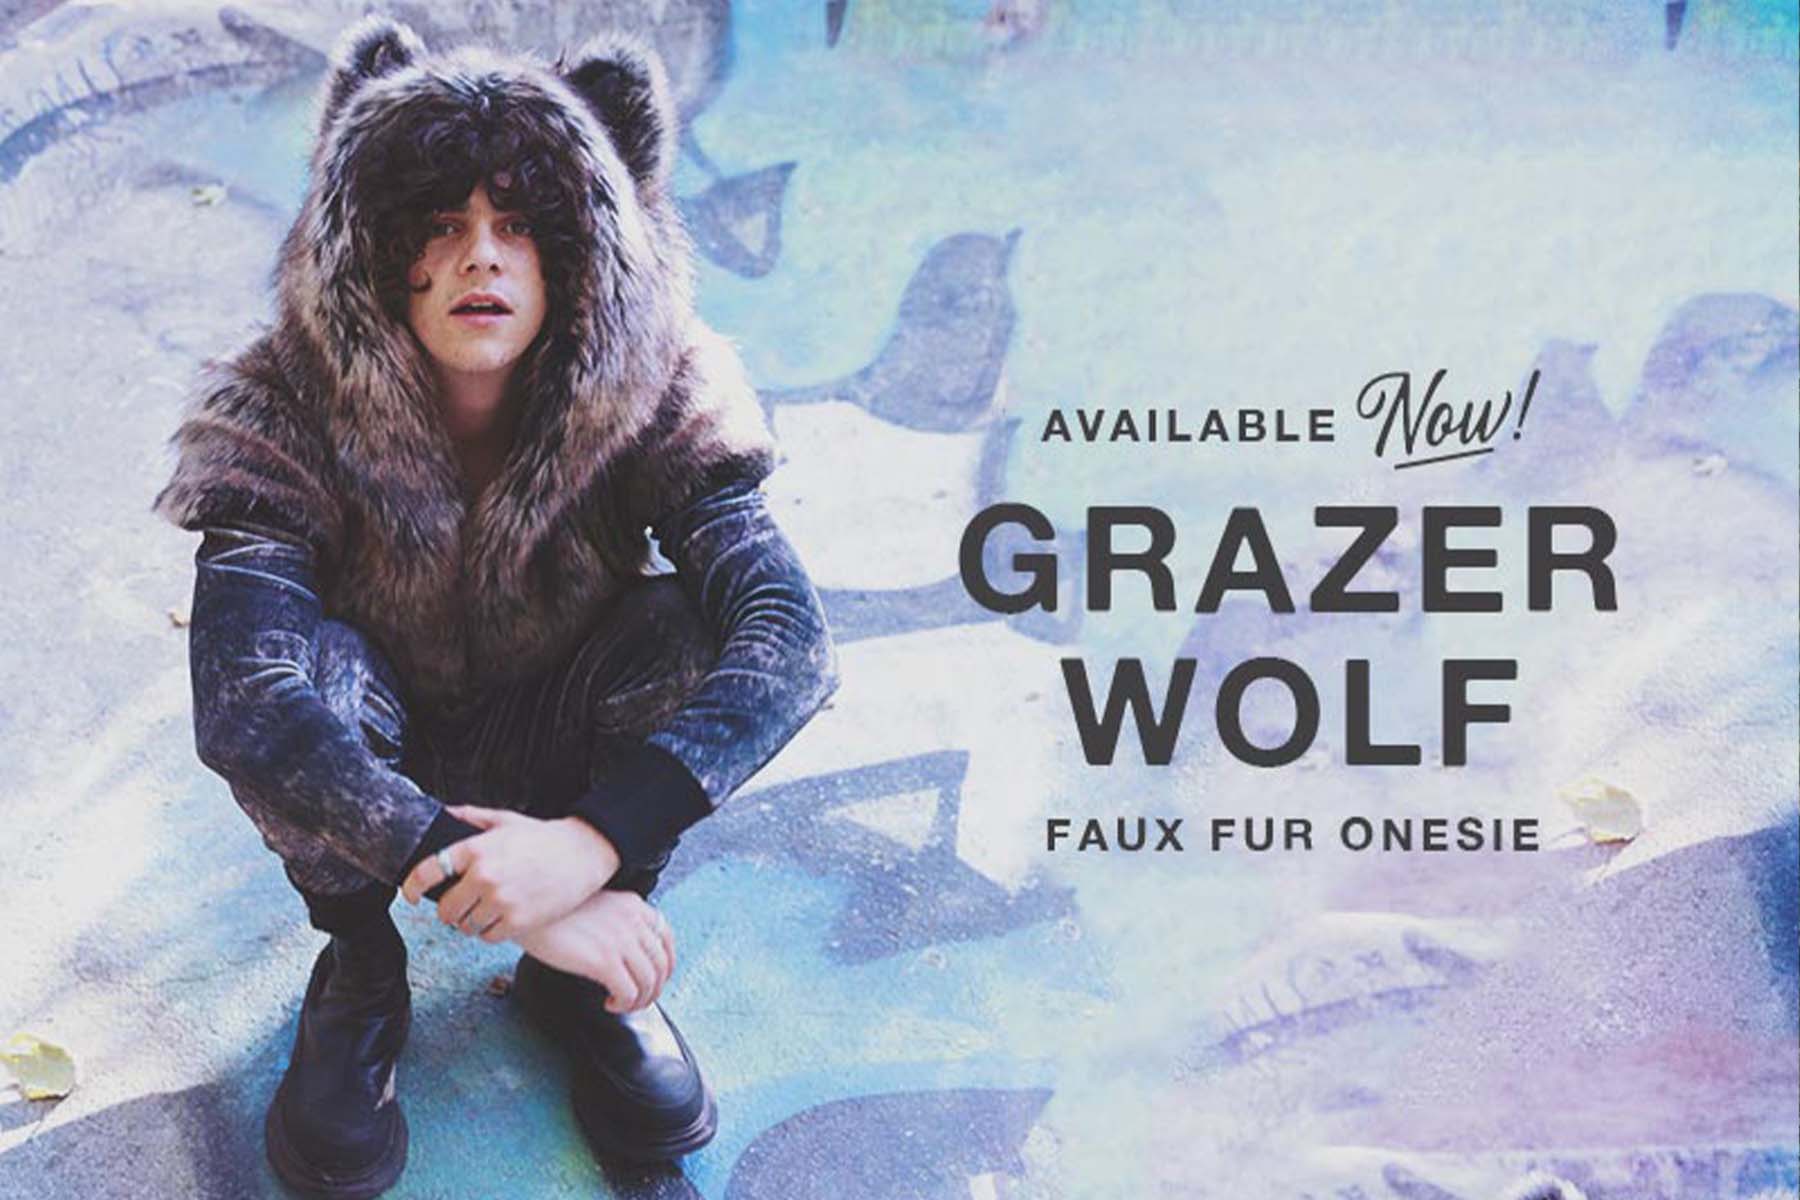 Jack Grazer wearing Grazer Wolf Faux Fur Onesie